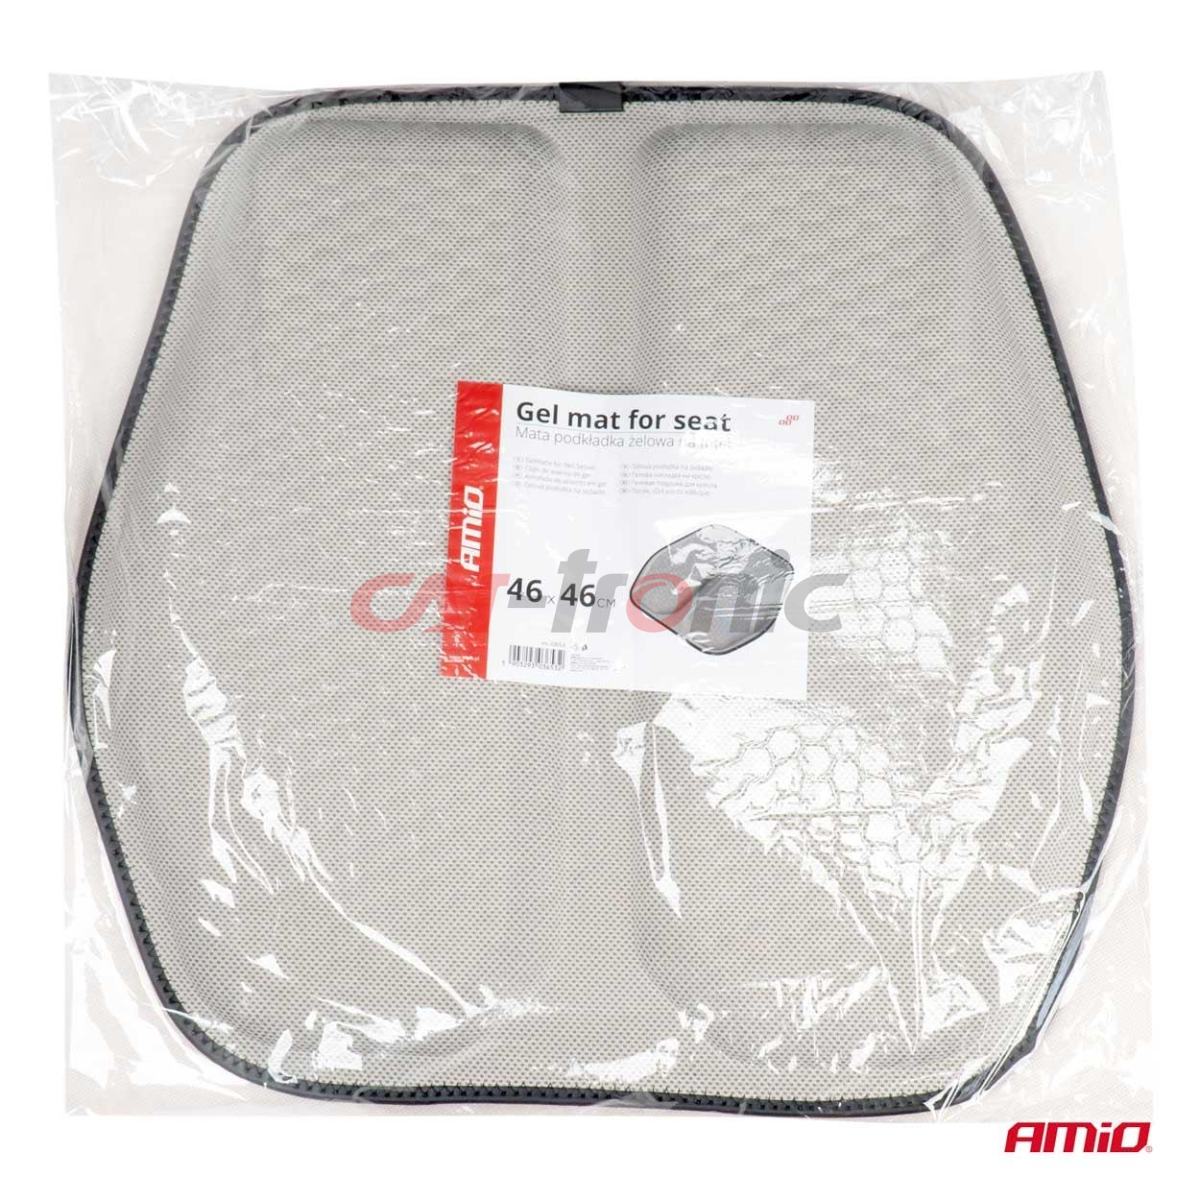 Mata podkładka poduszka żelowa na fotel AMIO-03653